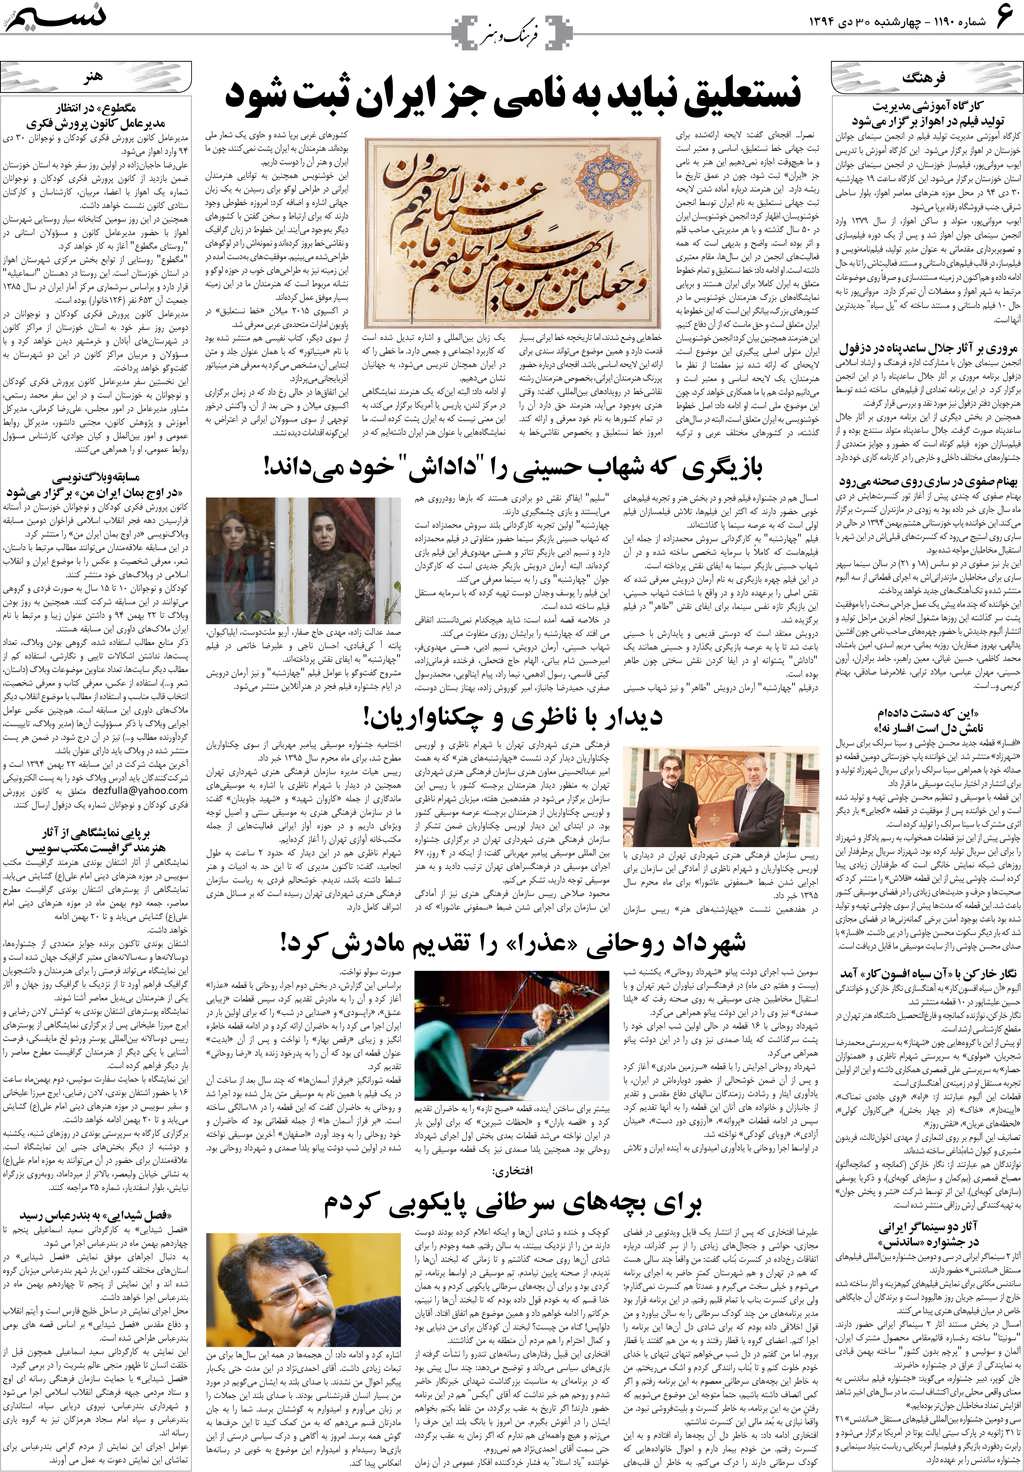 صفحه فرهنگ و هنر روزنامه نسیم شماره 1190